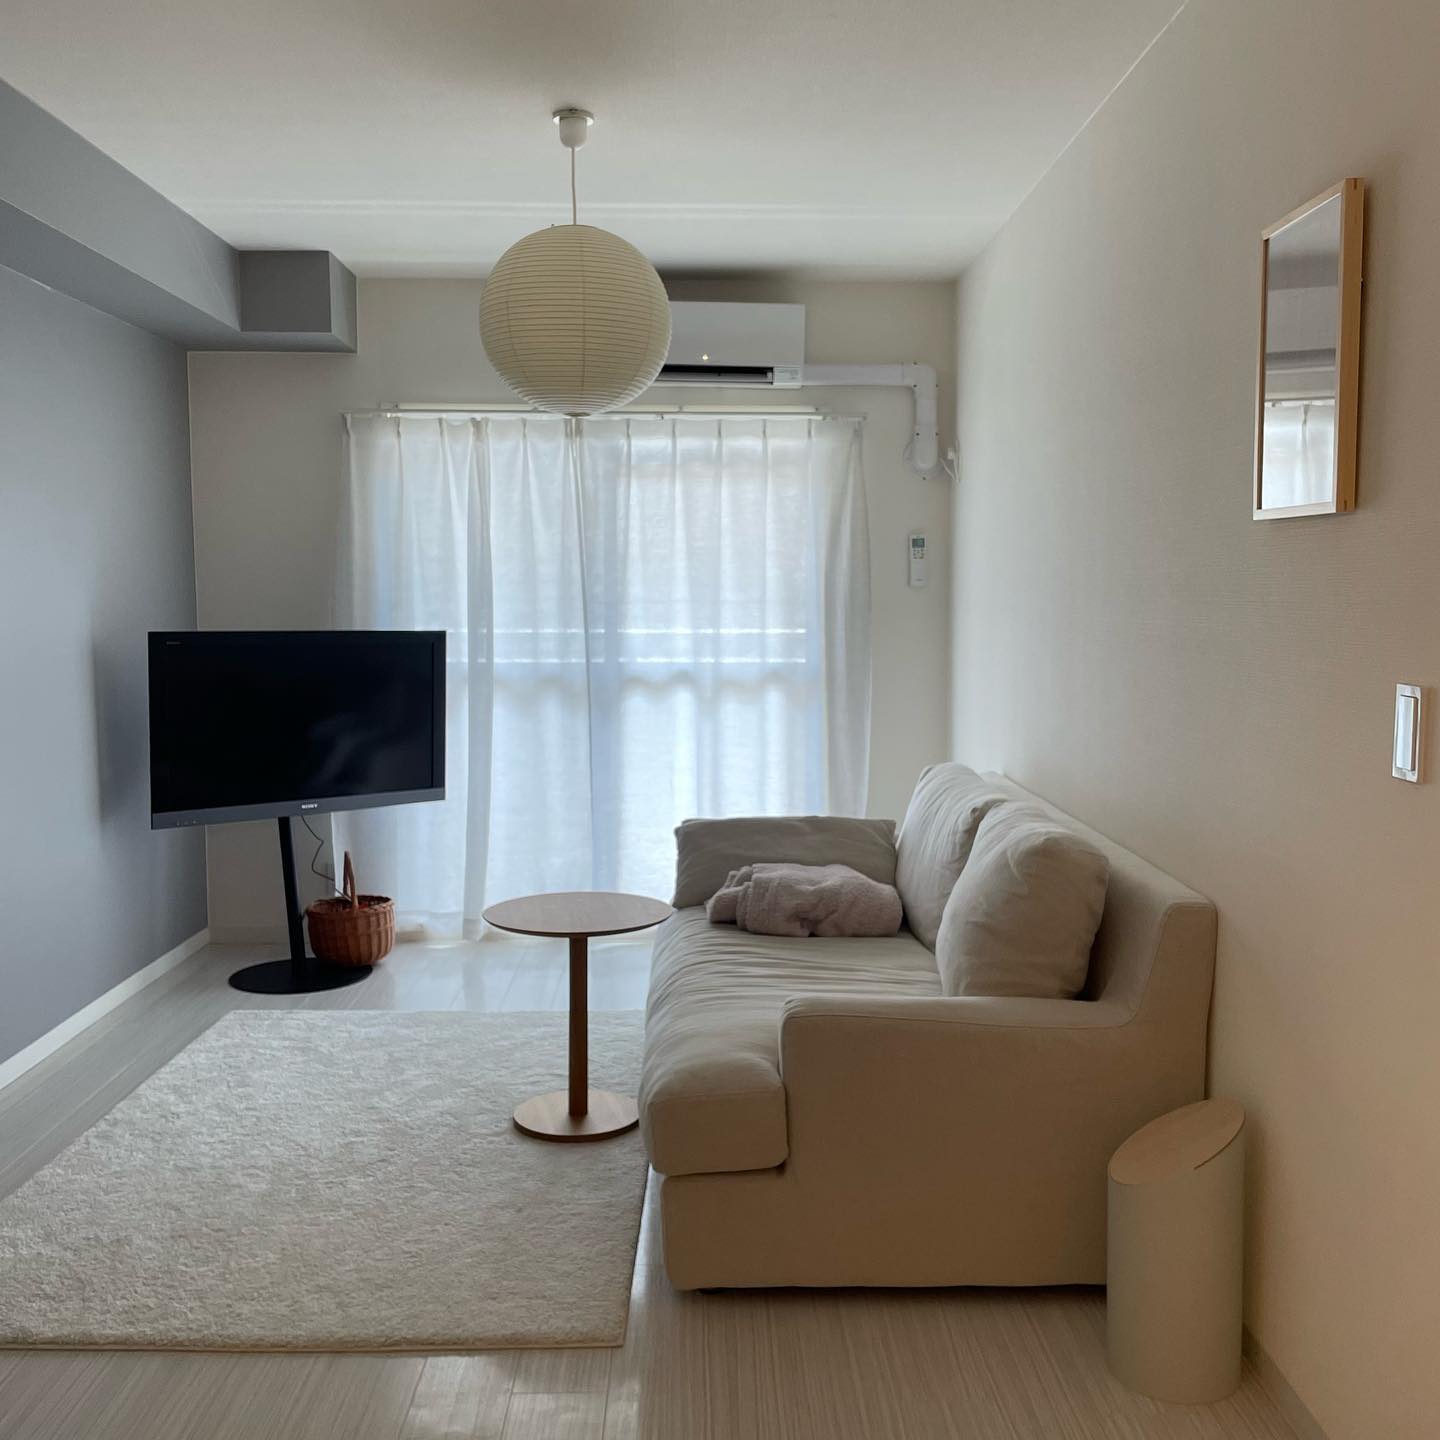 「生活動線」を考えたお部屋にしよう。シンプルで暮らしやすい家具配置とは？